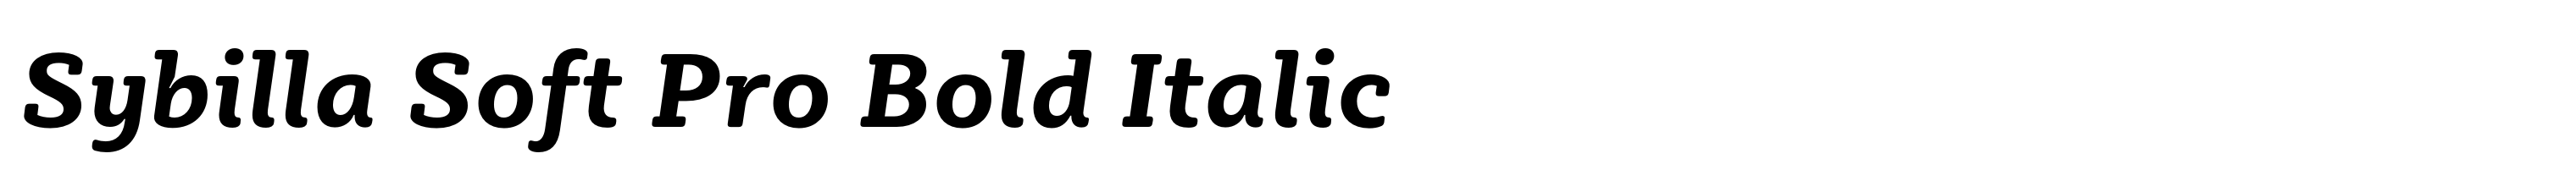 Sybilla Soft Pro Bold Italic